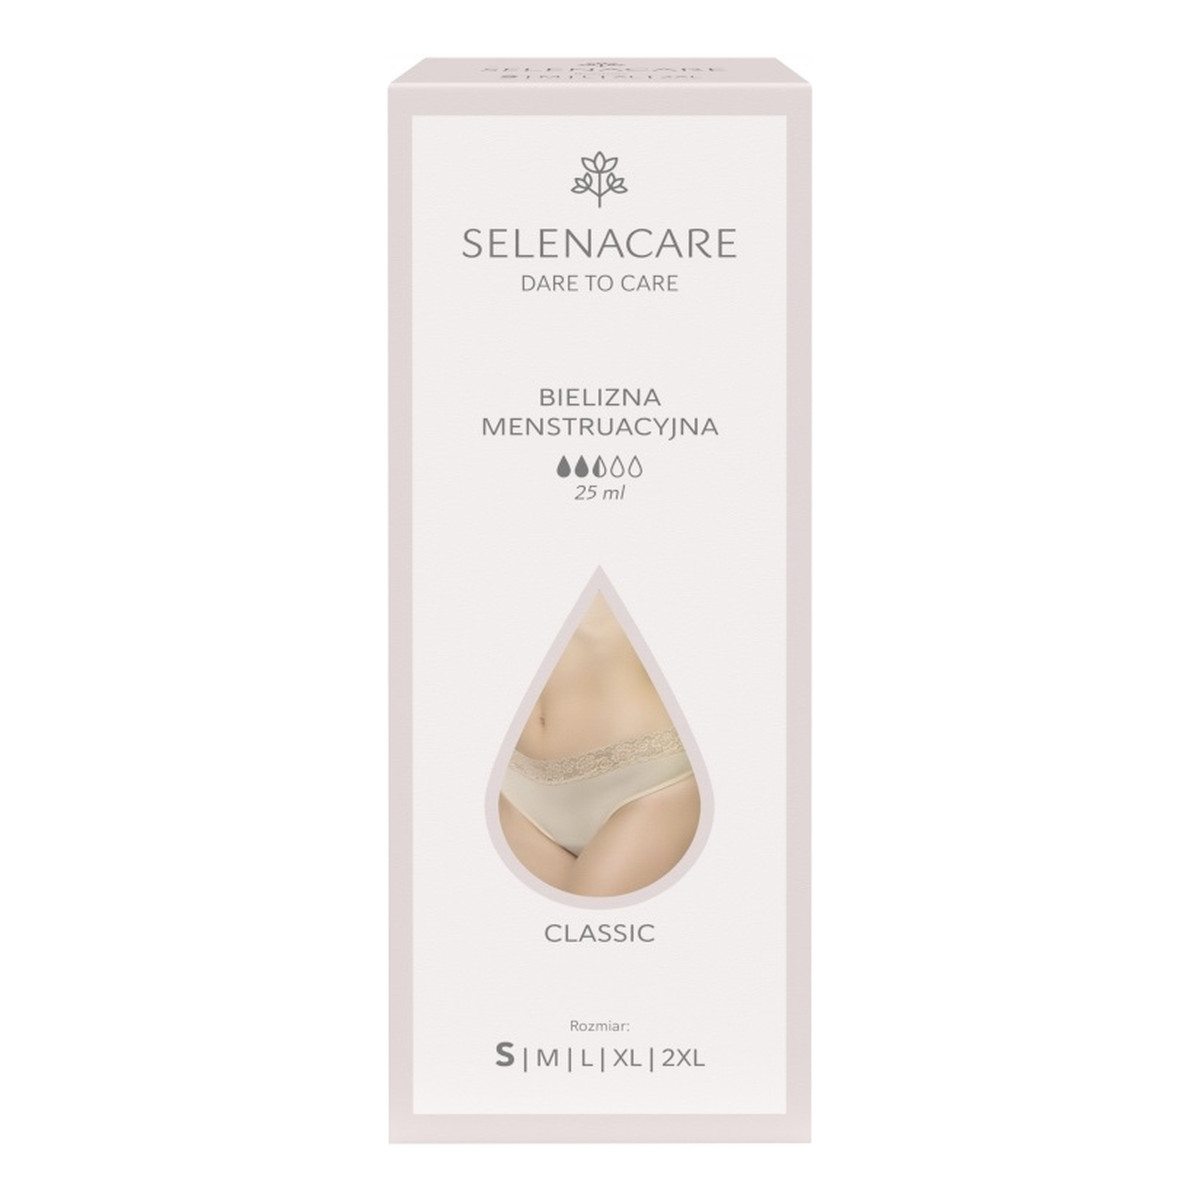 Selenacare Classic bielizna menstruacyjna beżowa s 25ml